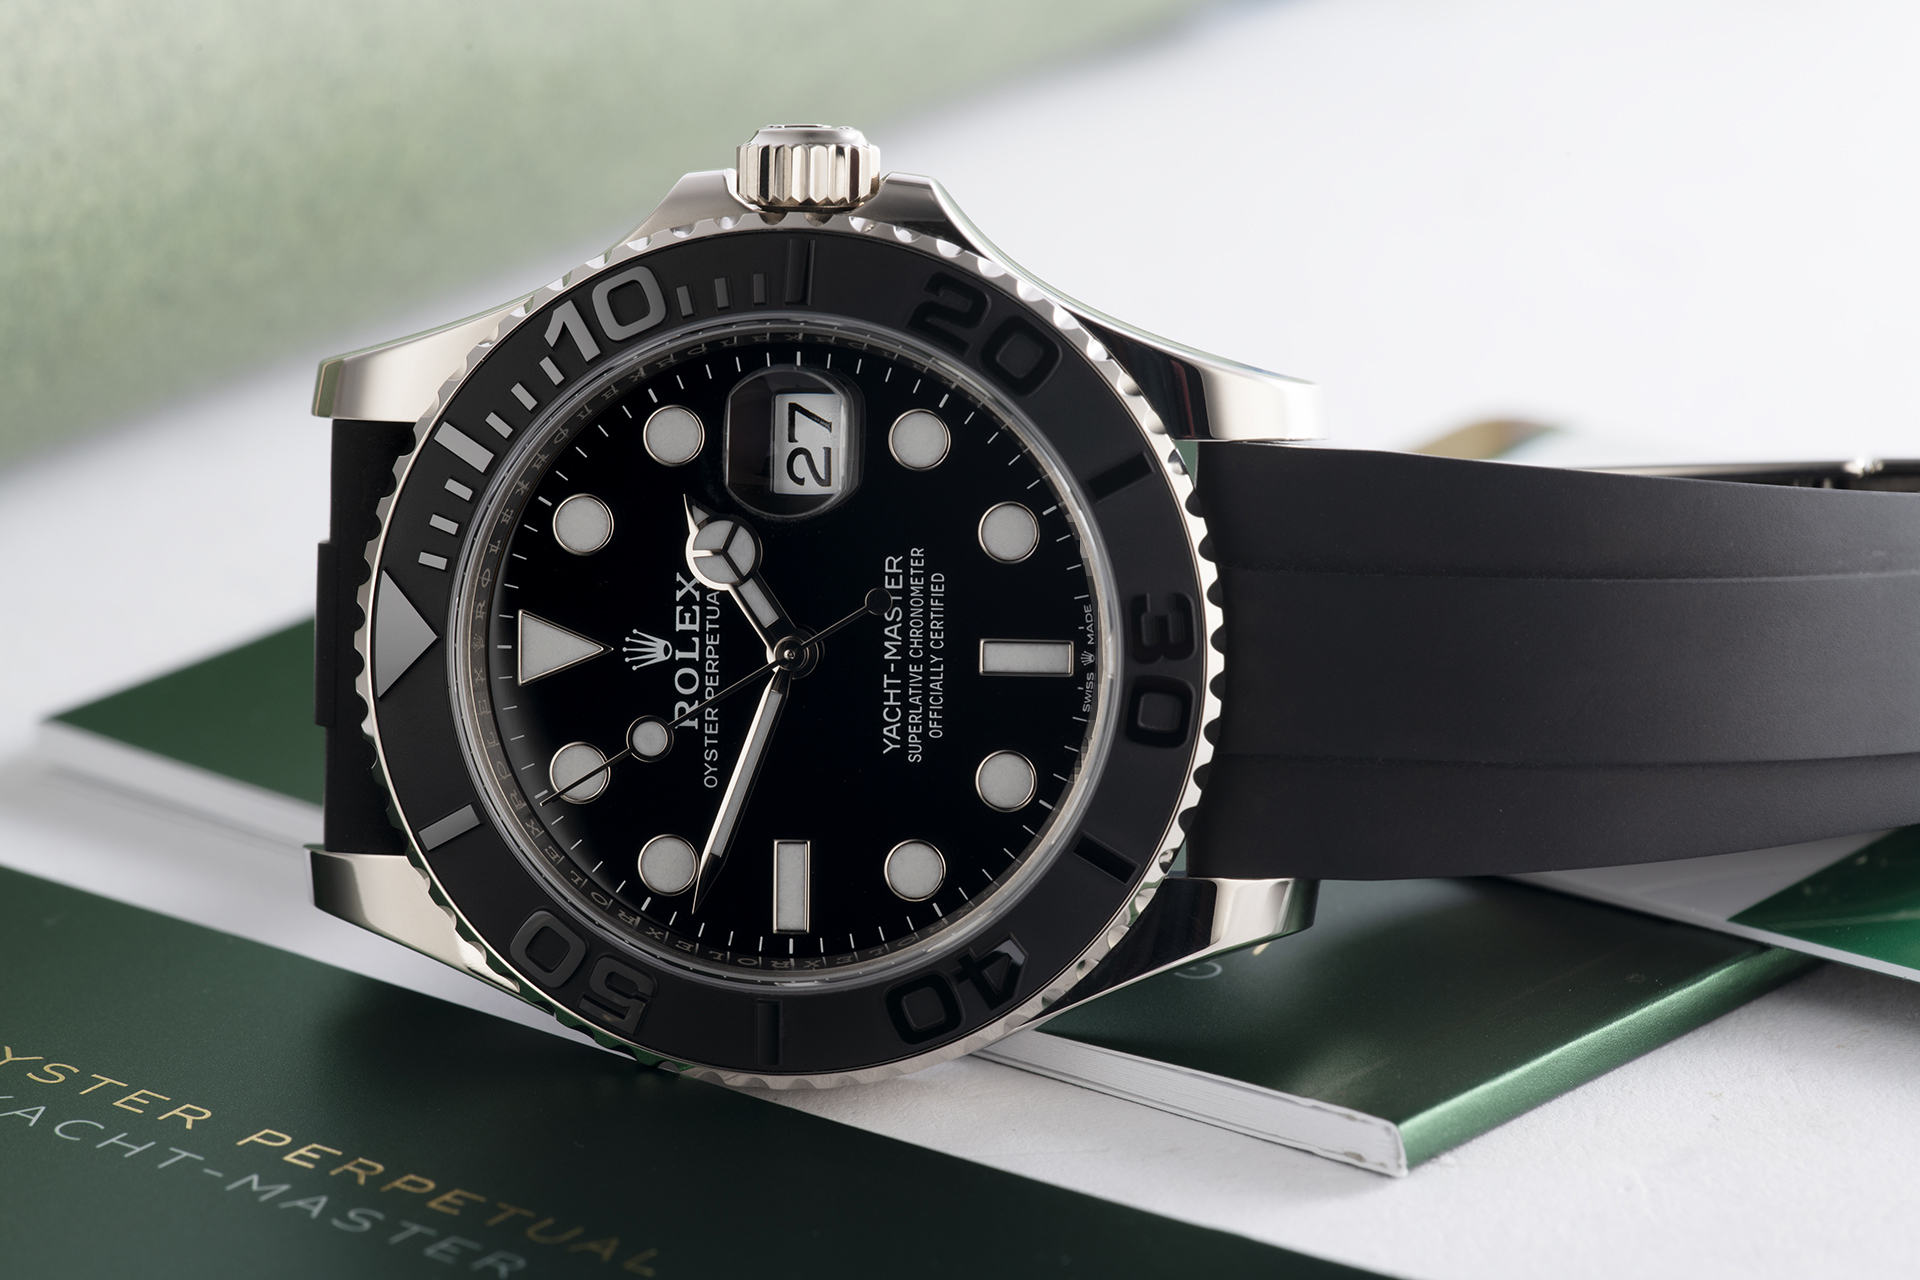 Rolex Yacht-Master Watches | ref 226659 | Rolex Warranty to 2024 | The ...